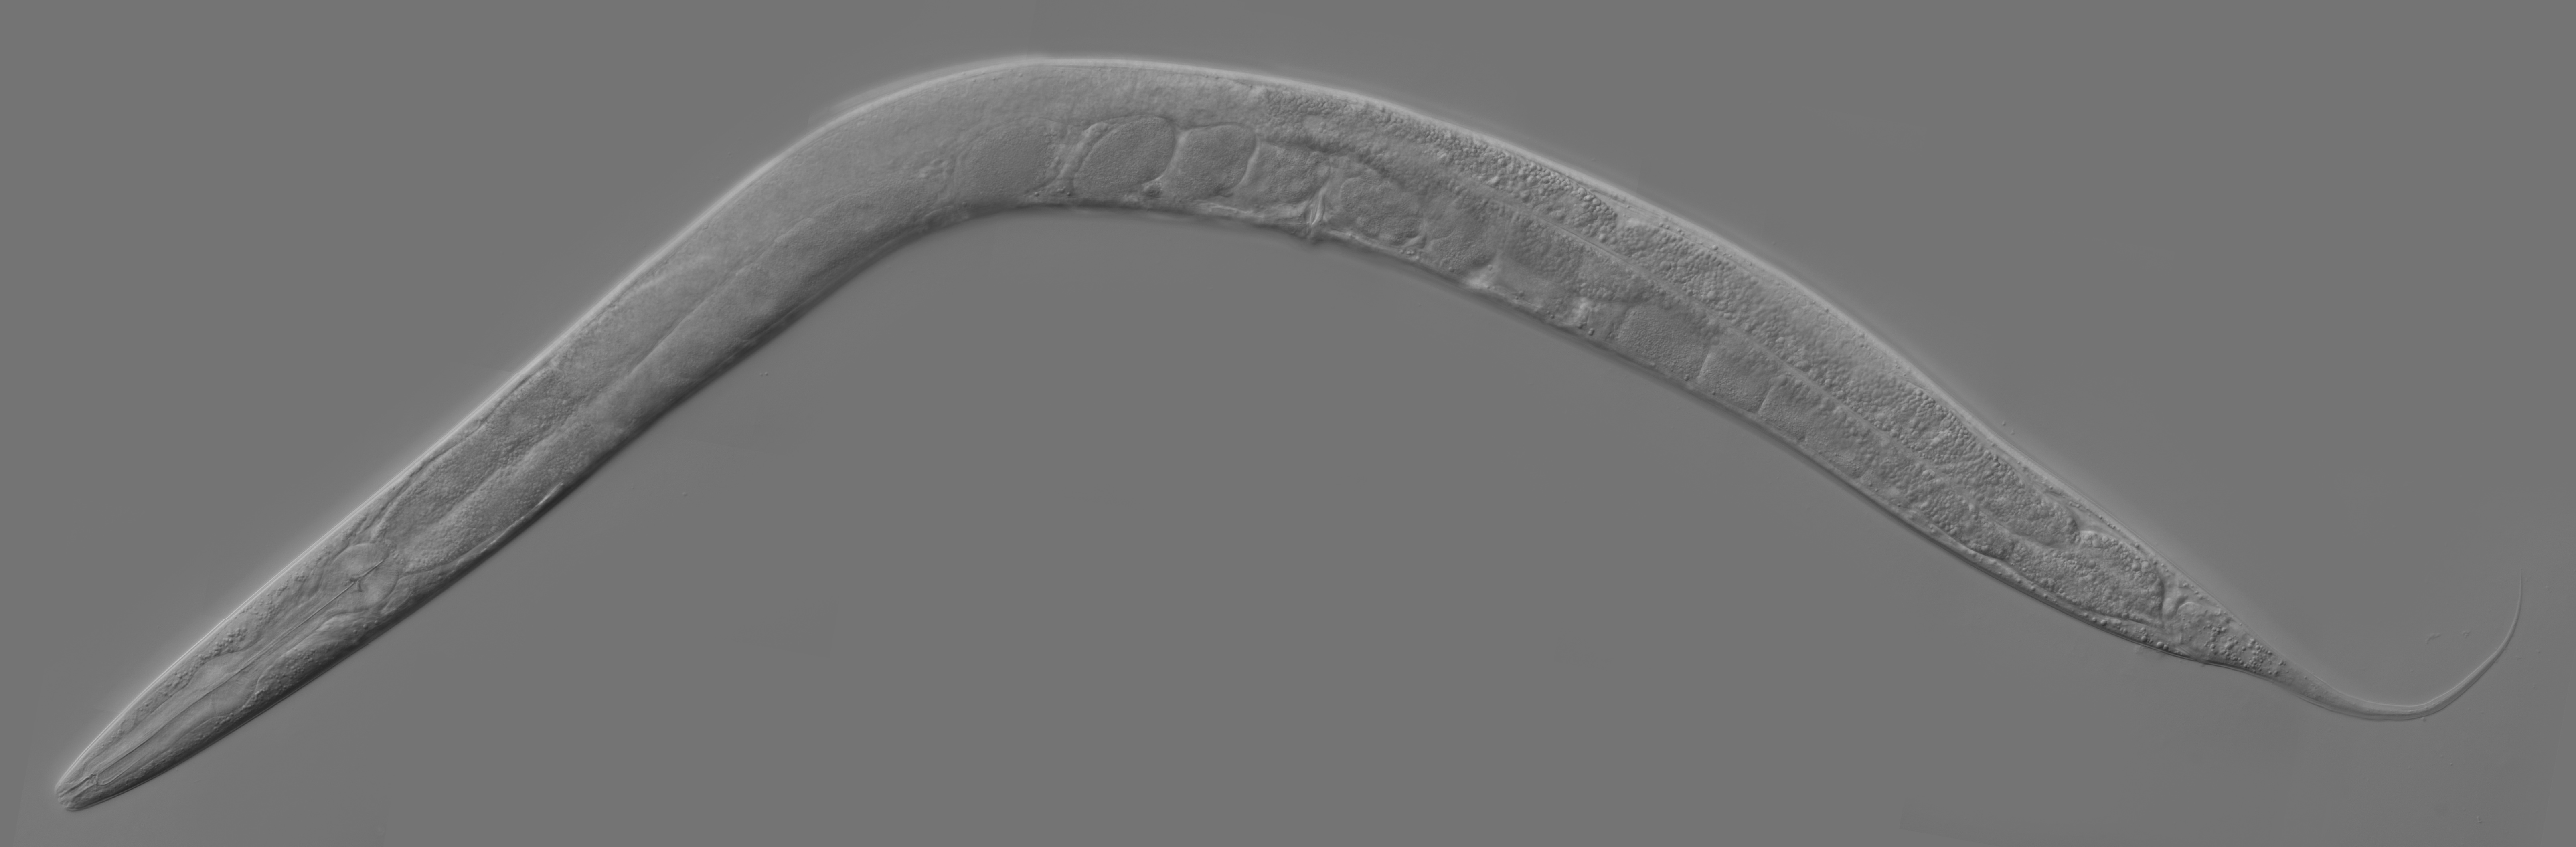 Круглые черви вида Caenorhabditis elegans используются биологами в качестве модельных организмов, так как они быстро размножаются и неприхотливы в уходе.